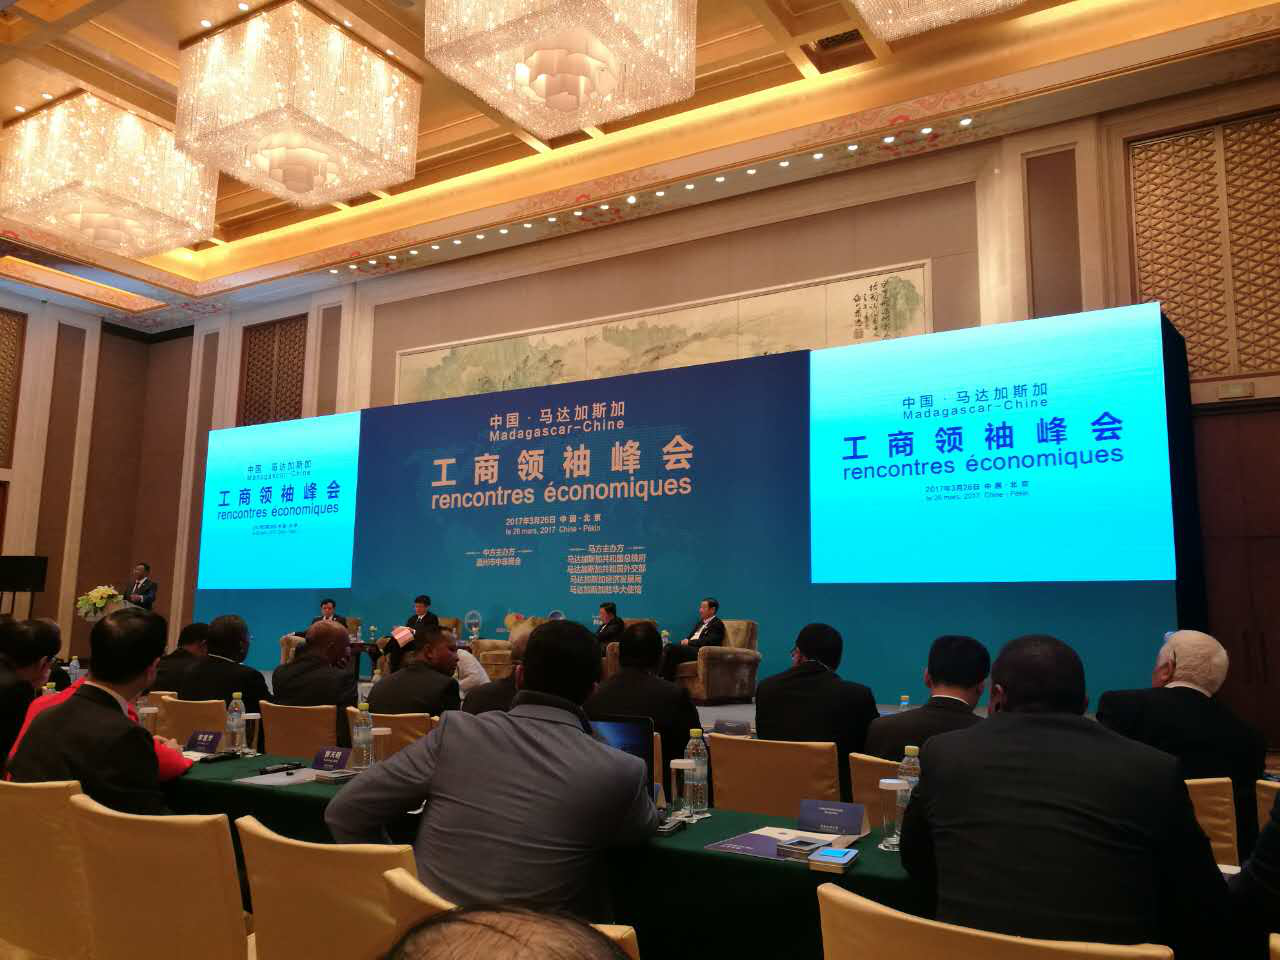 仟亿达集团（证券代码831999）董事长郑两斌参加中国—马达加斯加工商峰会